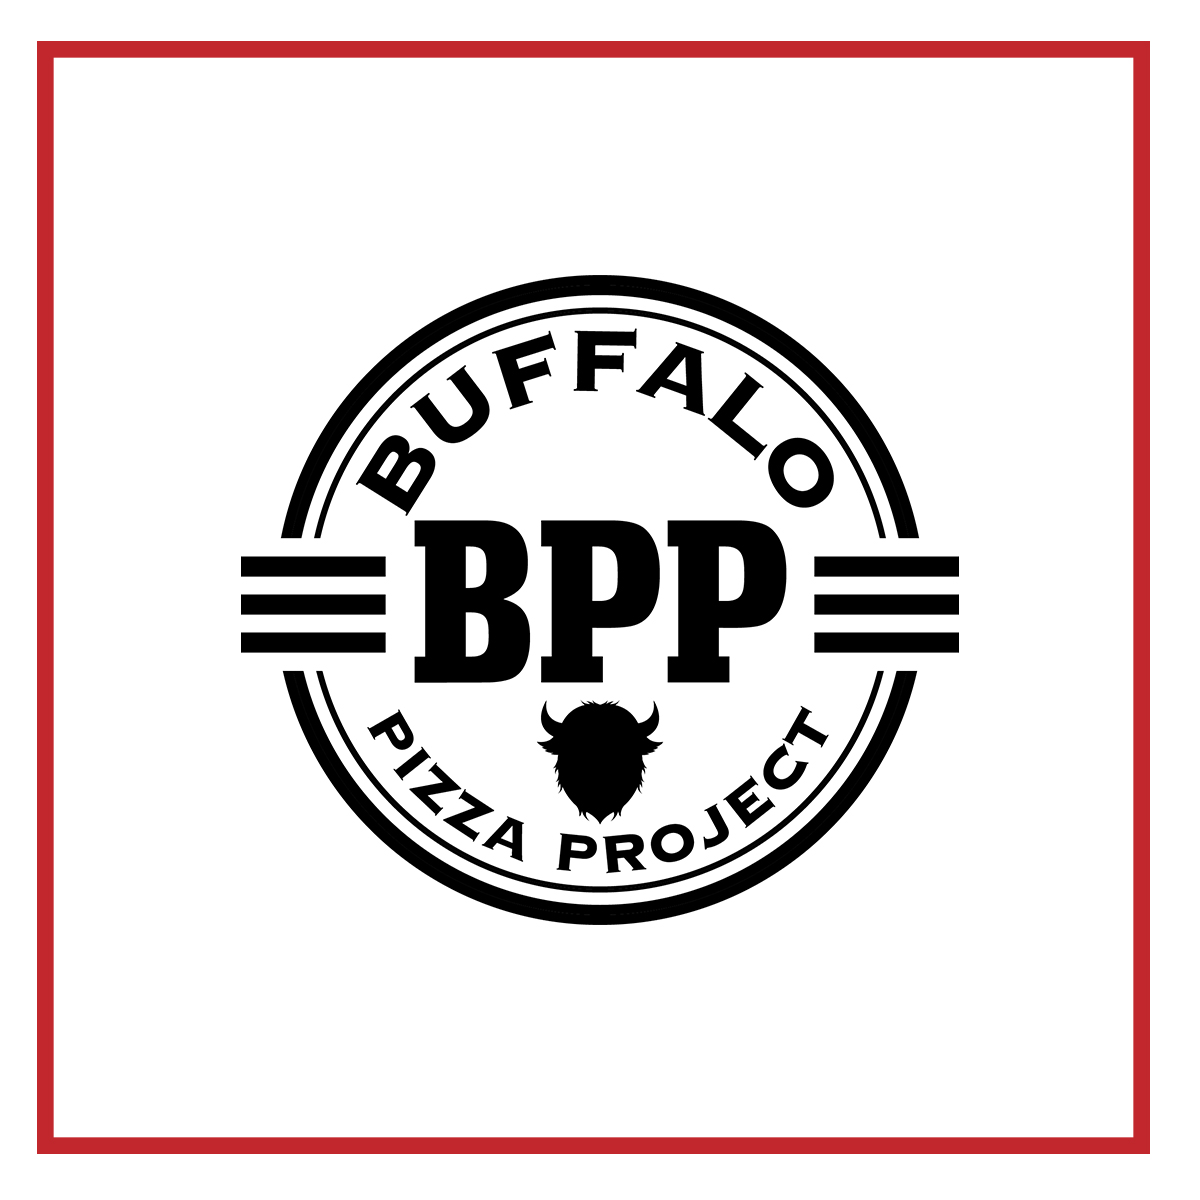 Buffalo Pizza Project